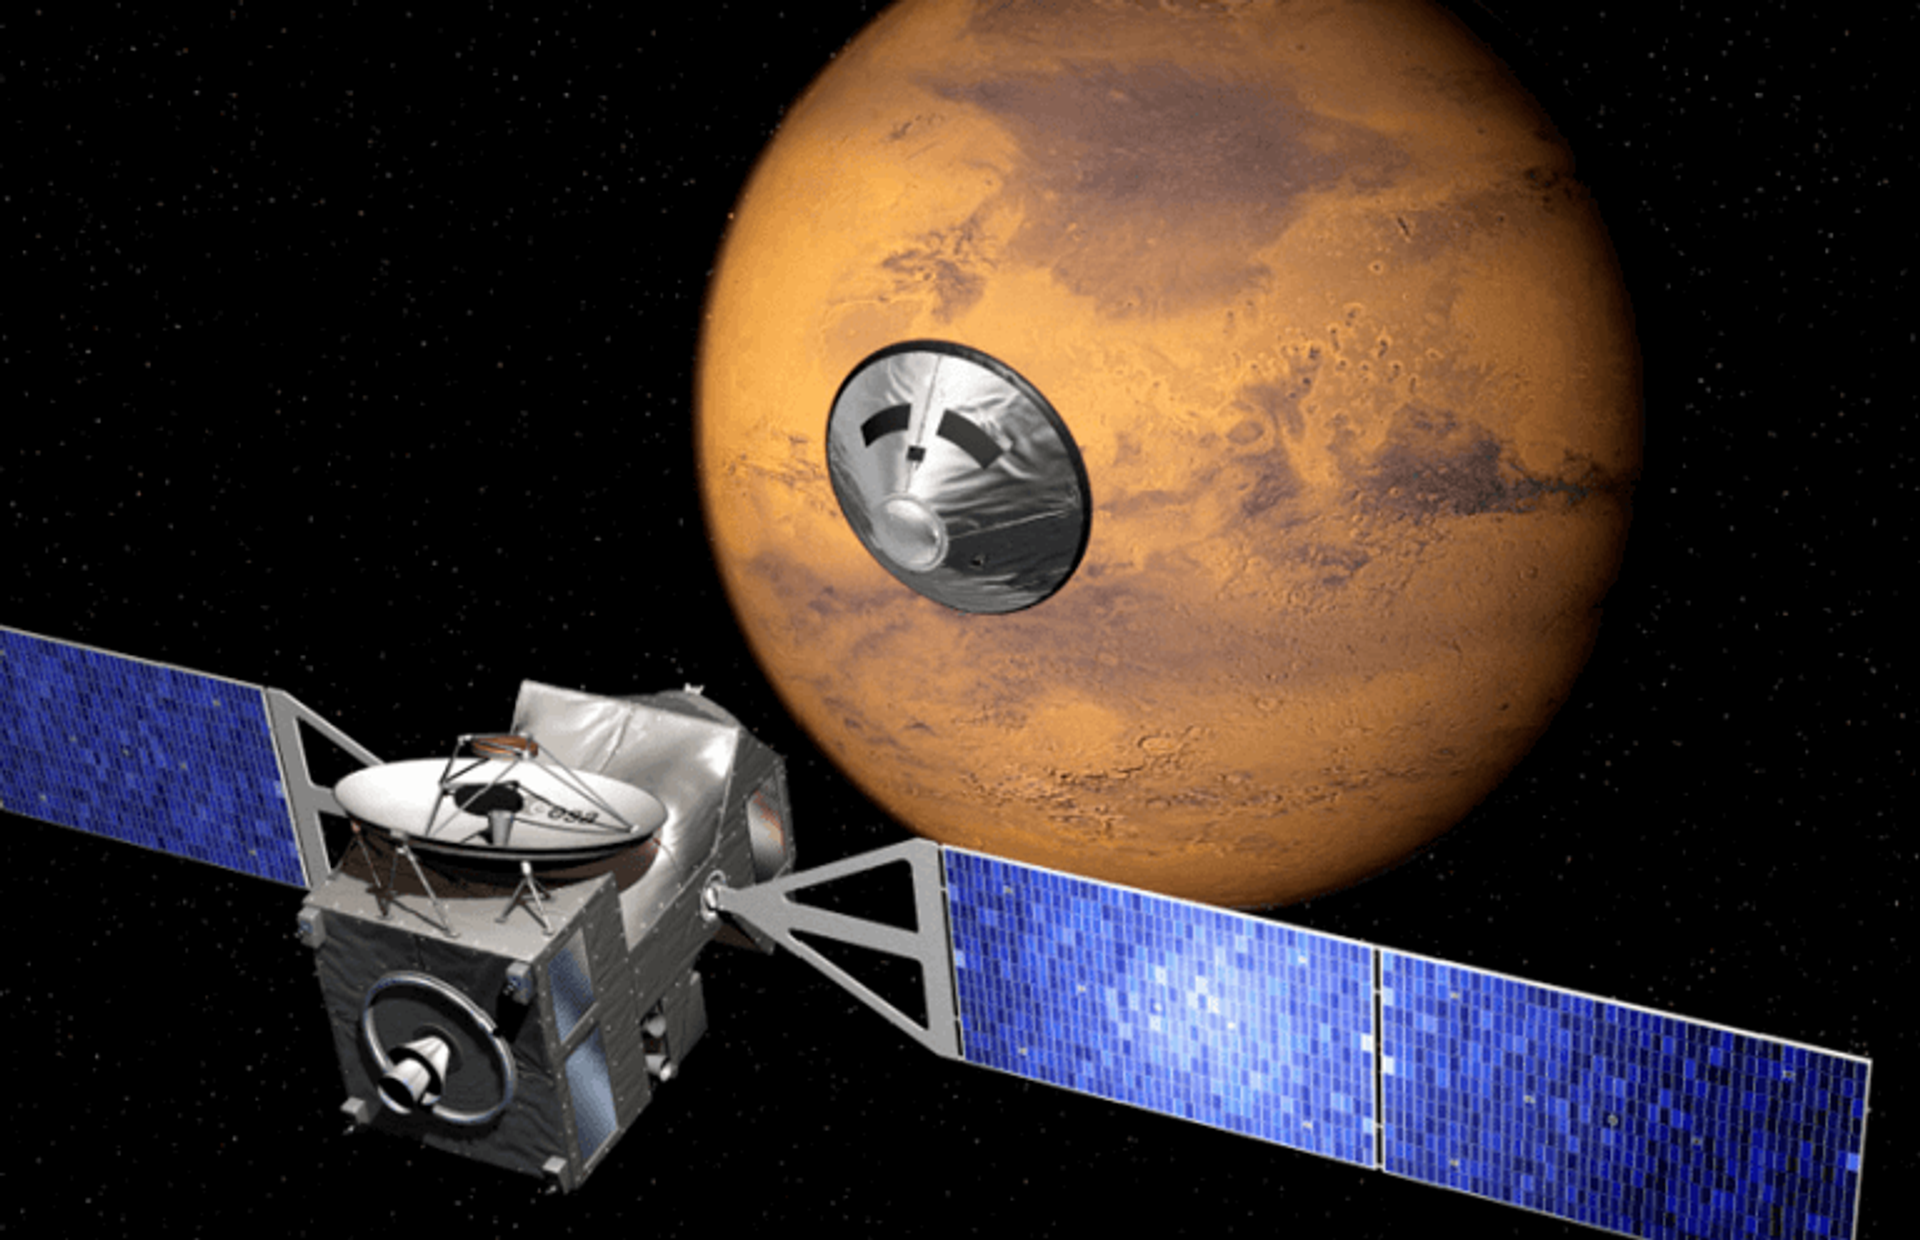 ESA ExoMars mission Trace Gas Orbiter